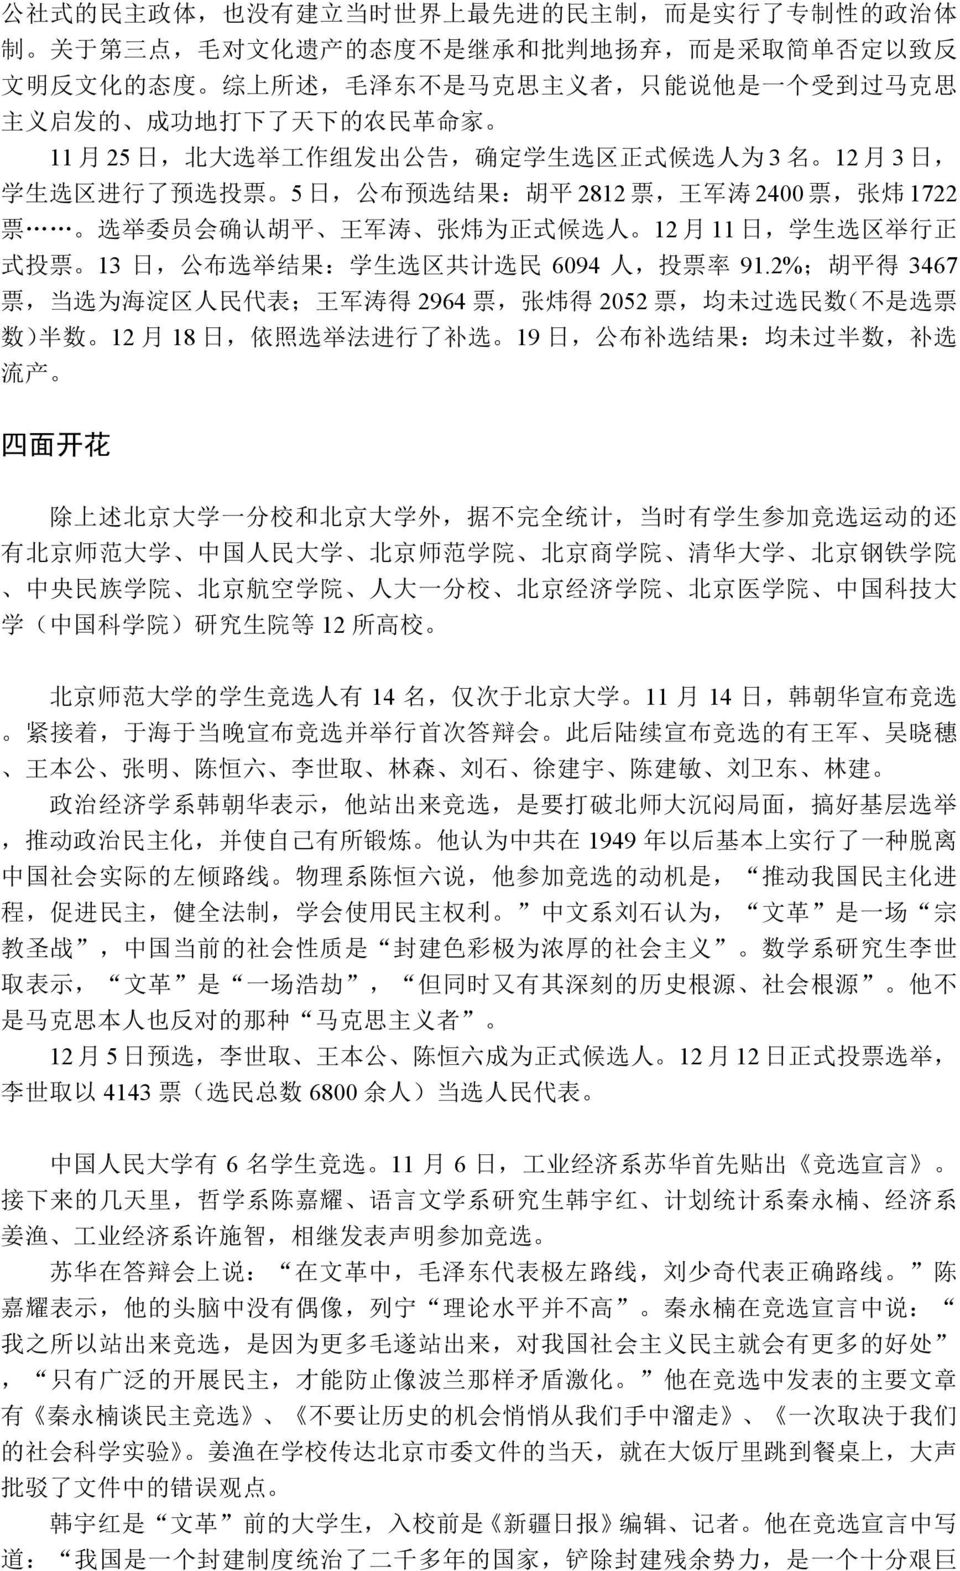 票, 张 炜 1722 票 选 举 委 员 会 确 认 胡 平 王 军 涛 张 炜 为 正 式 候 选 人 12 月 11 日, 学 生 选 区 举 行 正 式 投 票 13 日, 公 布 选 举 结 果 : 学 生 选 区 共 计 选 民 6094 人, 投 票 率 91.